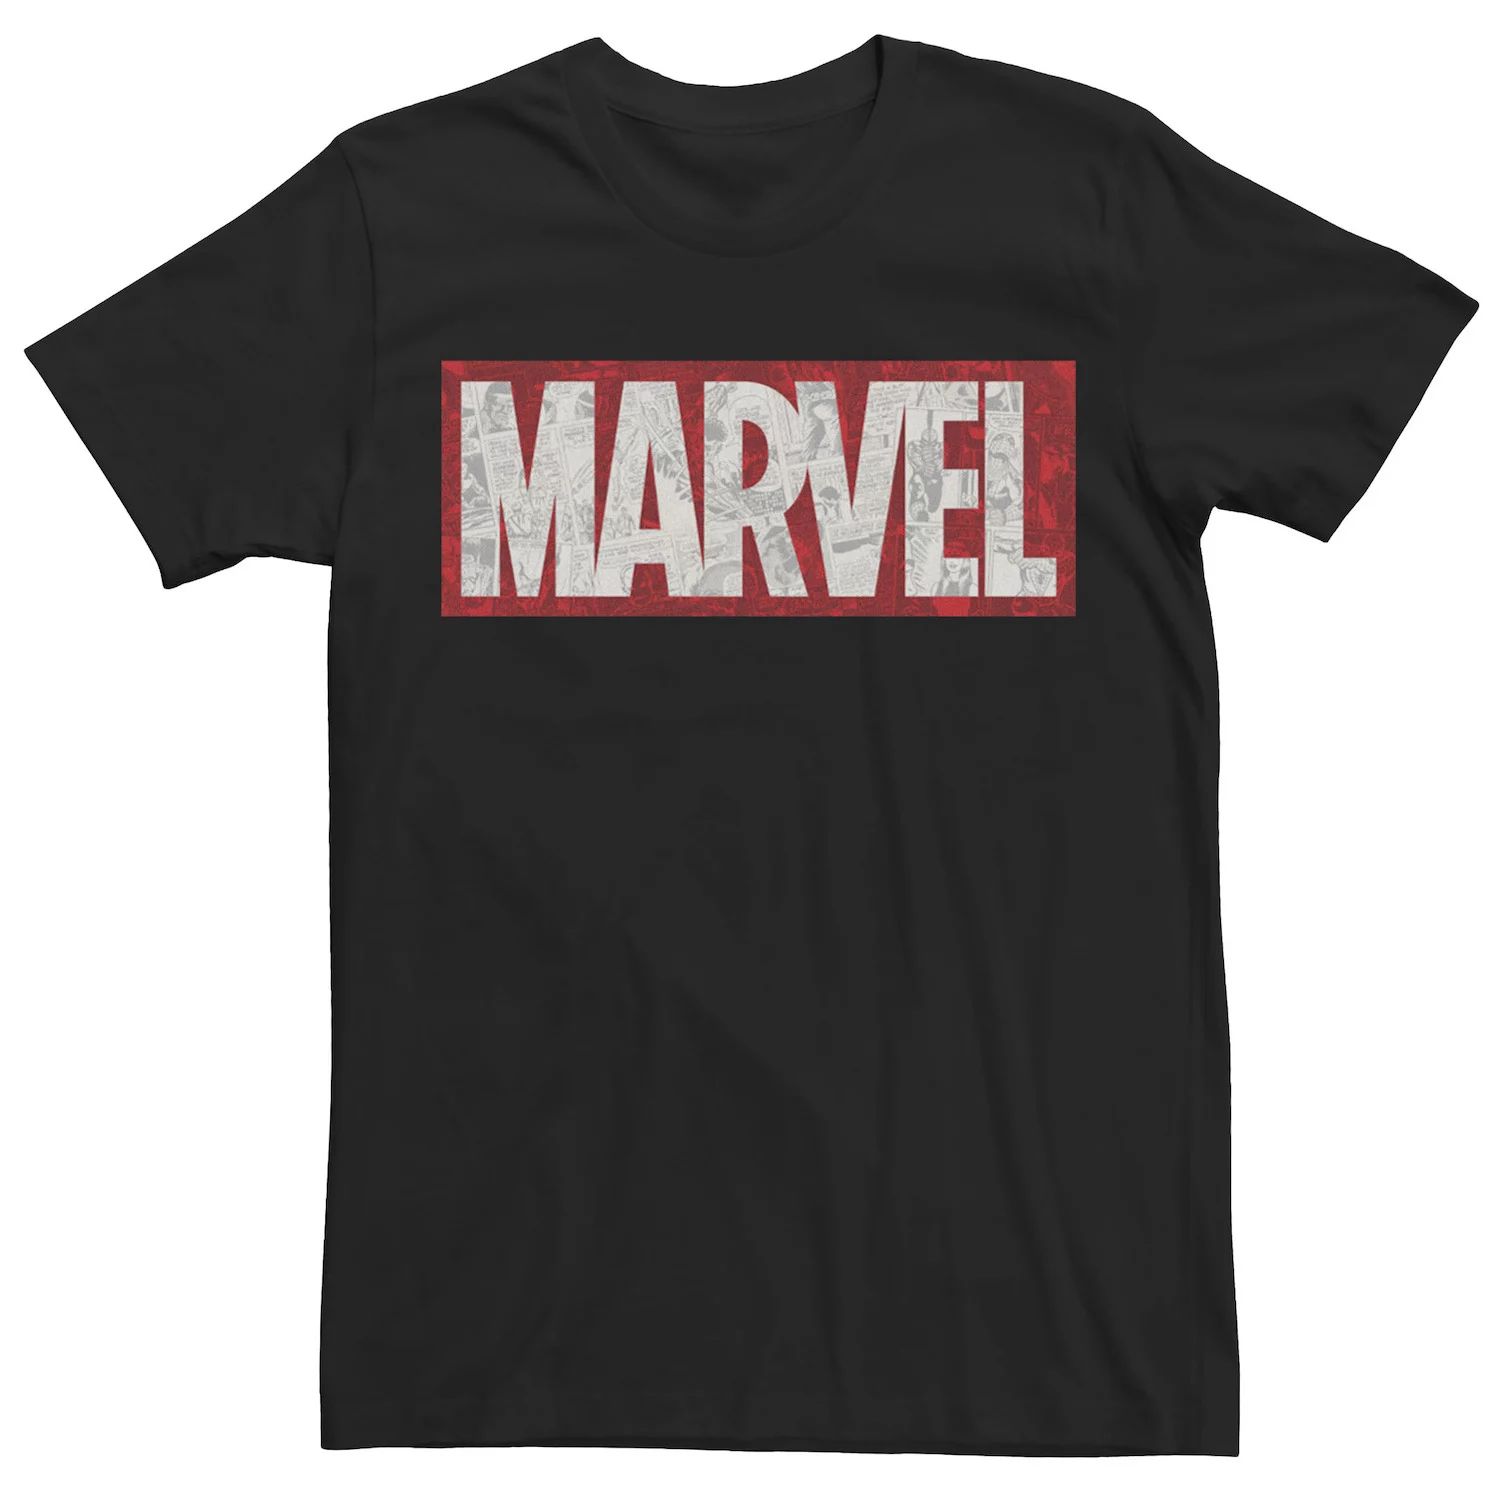 Мужская футболка с логотипом комиксов Marvel